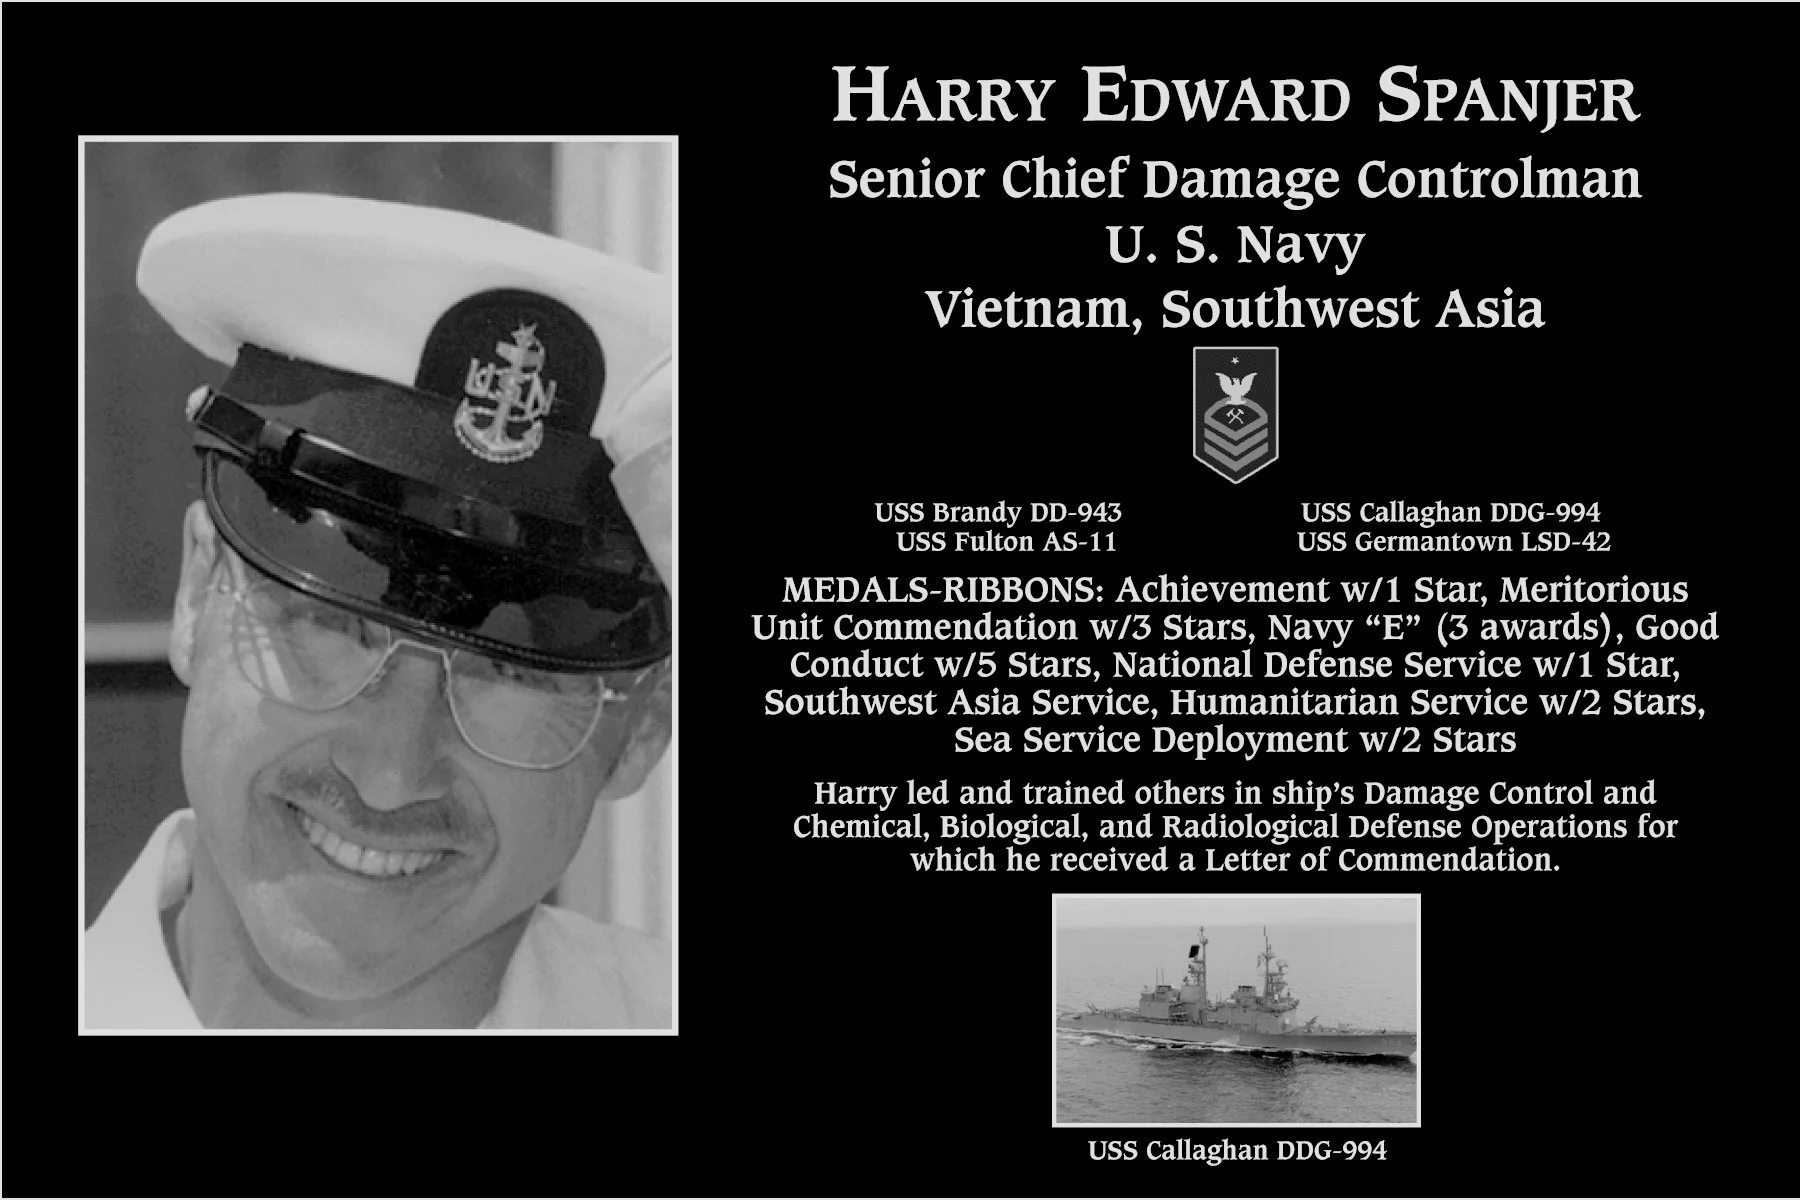 Harry Edward Spanjer